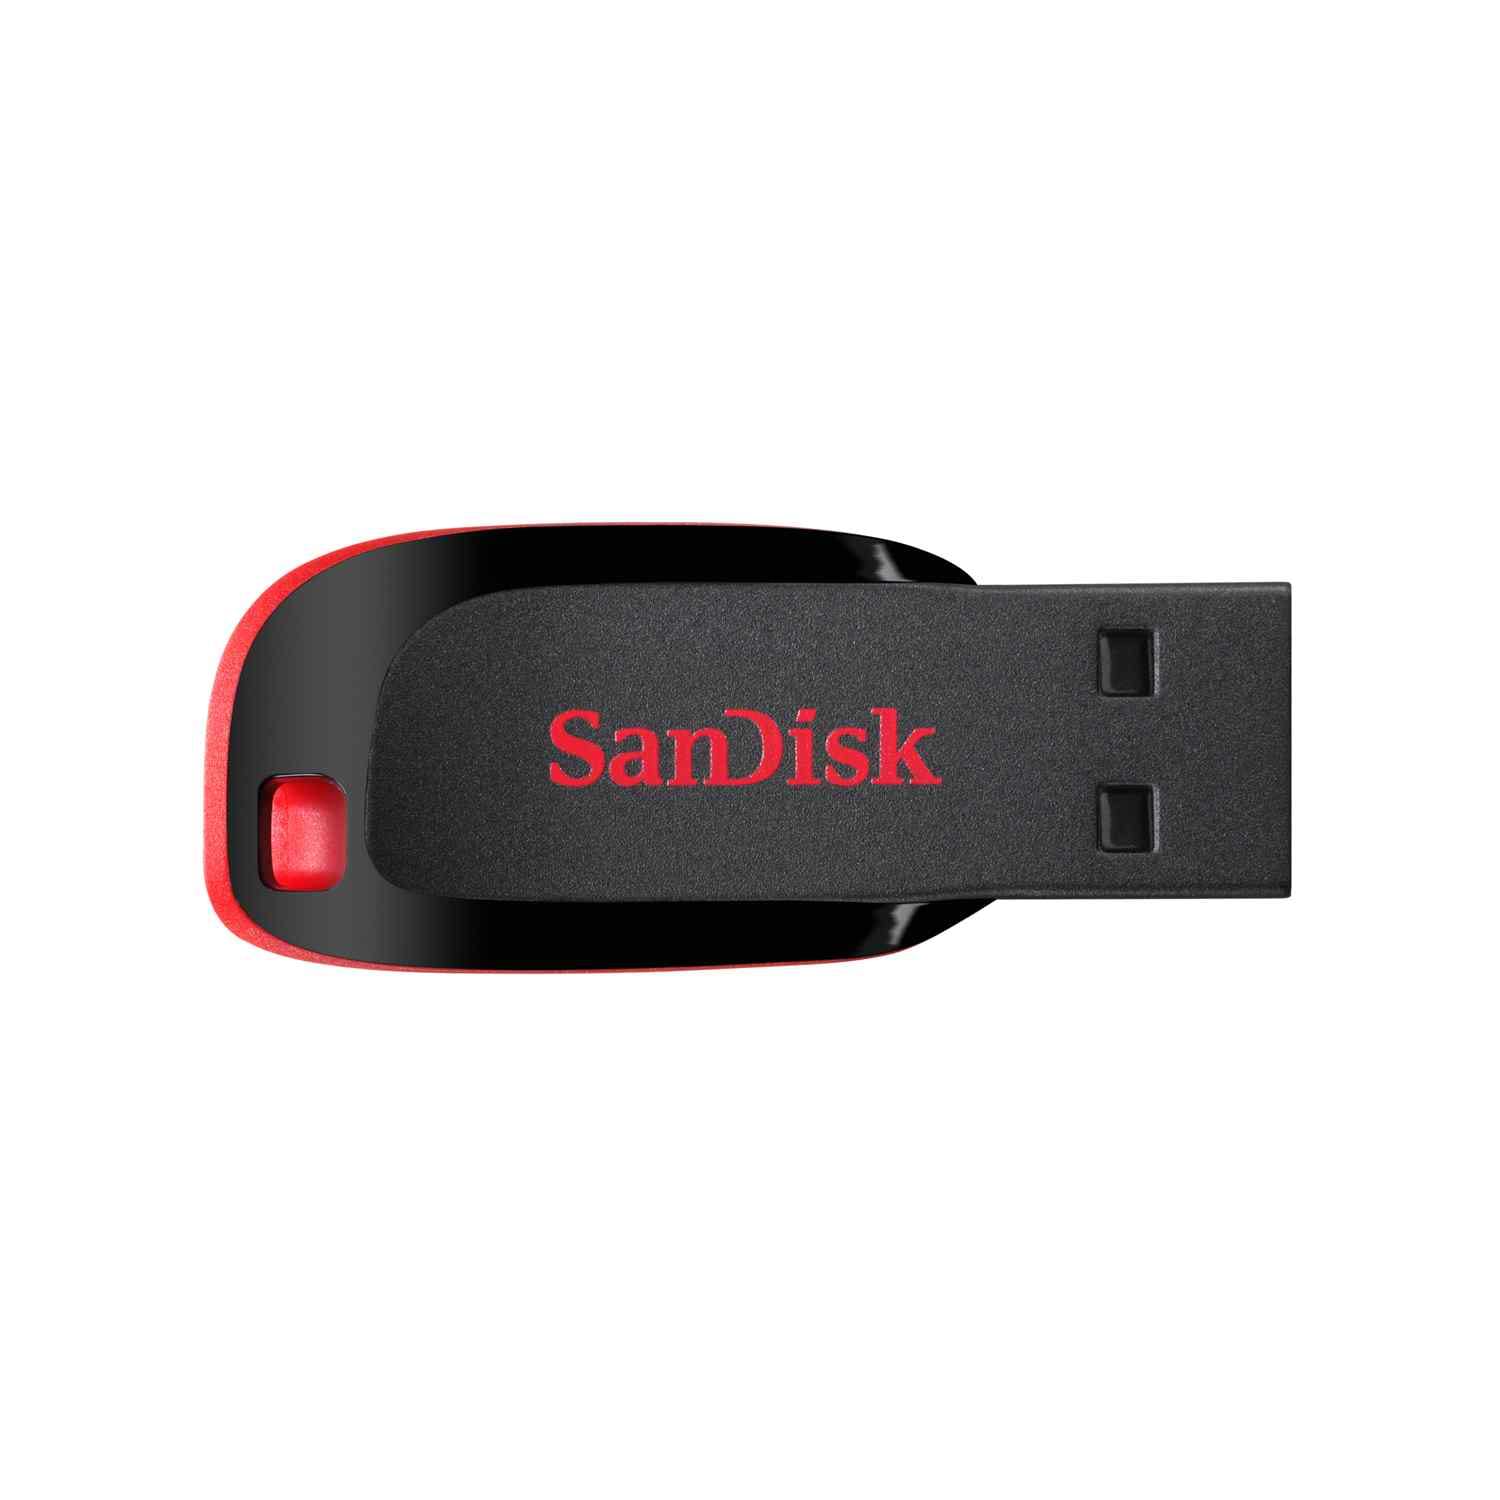 זיכרון נייד של סן דיסק San Disk OTG 32GB SDDD-016G נישא בקלות